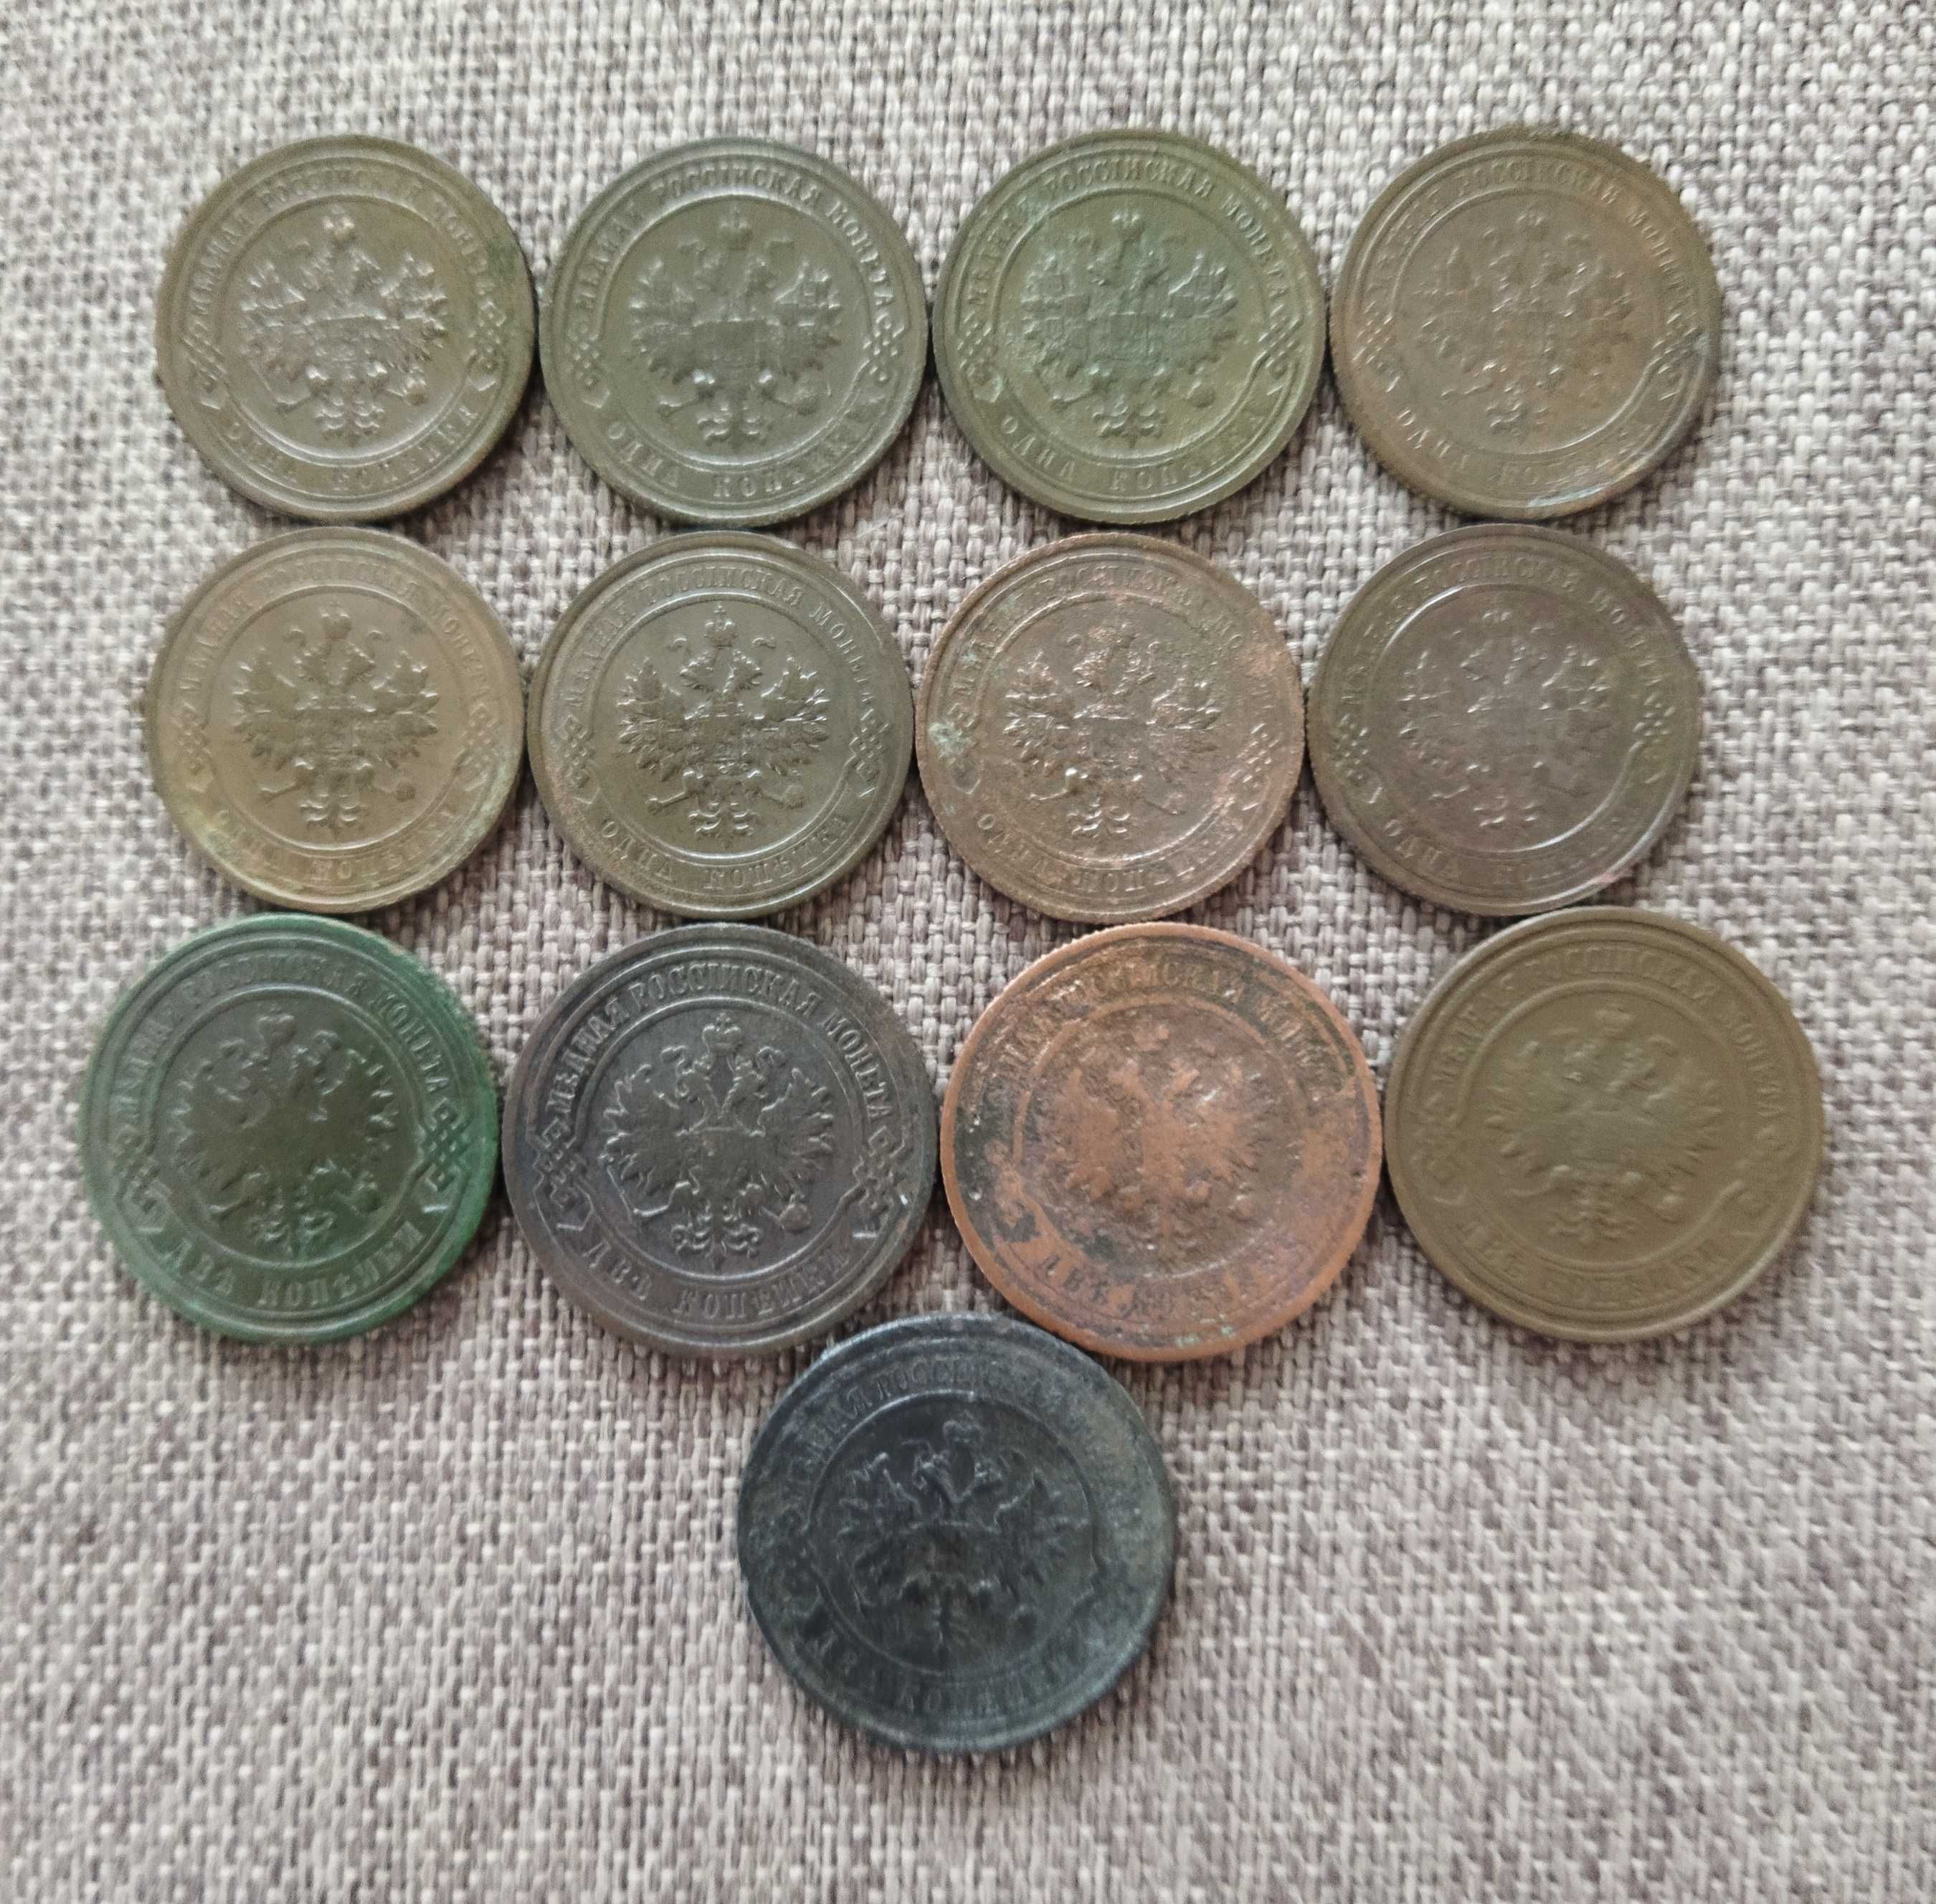 Монеты 1 и 2 копейки Николая - II (13шт одним лотом)